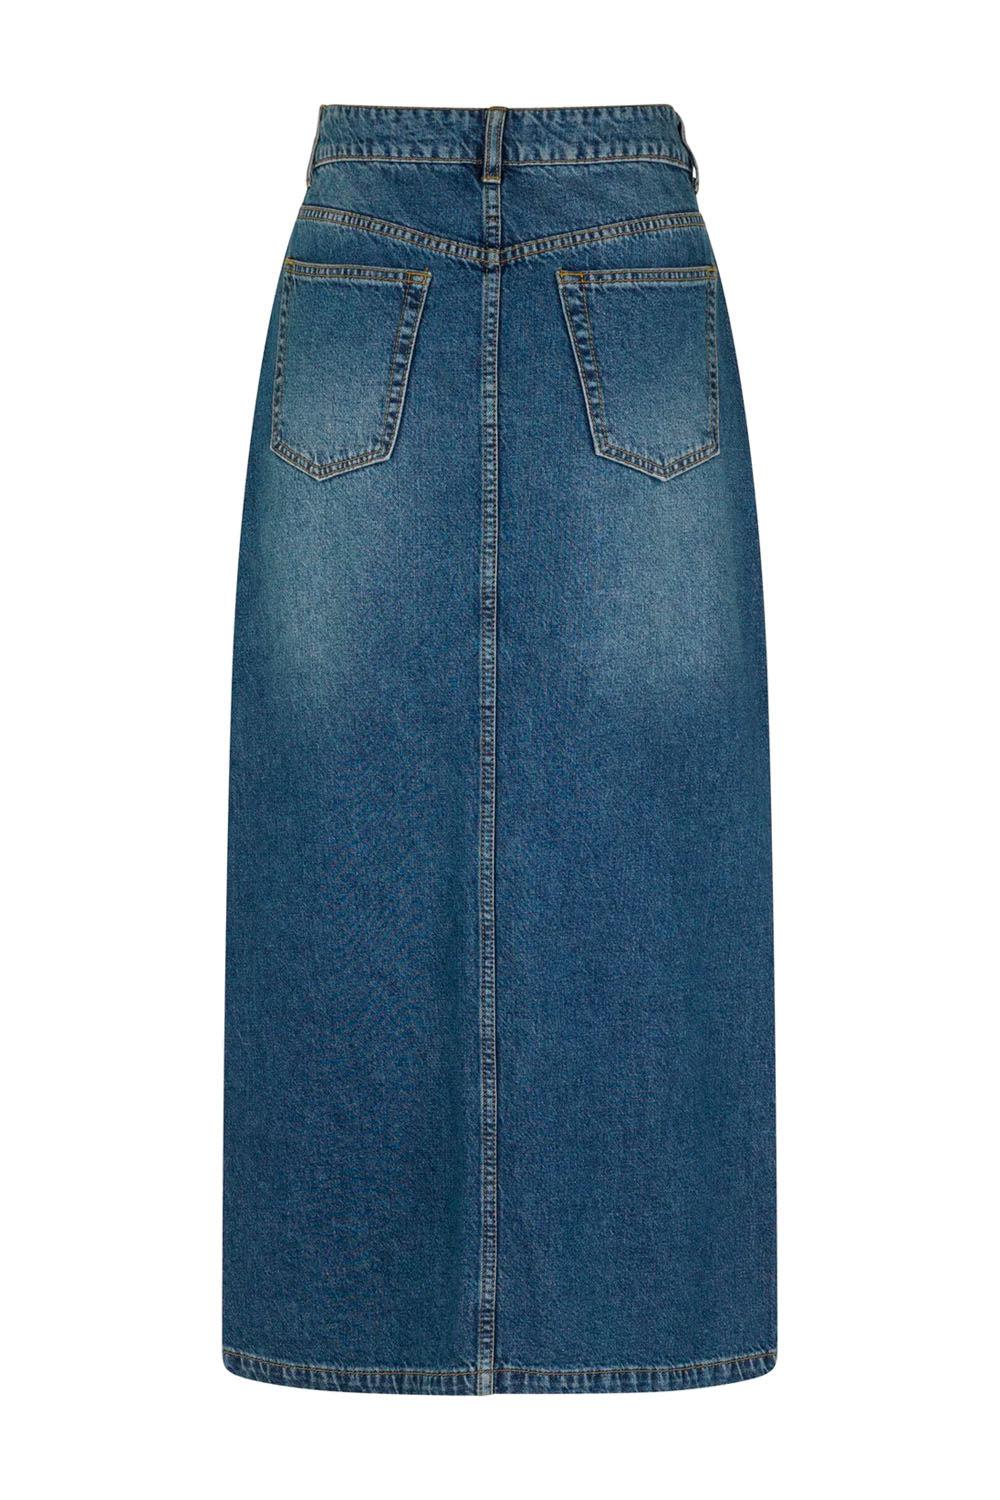 Lopa Long-M Skirt Vintage Blue Wash